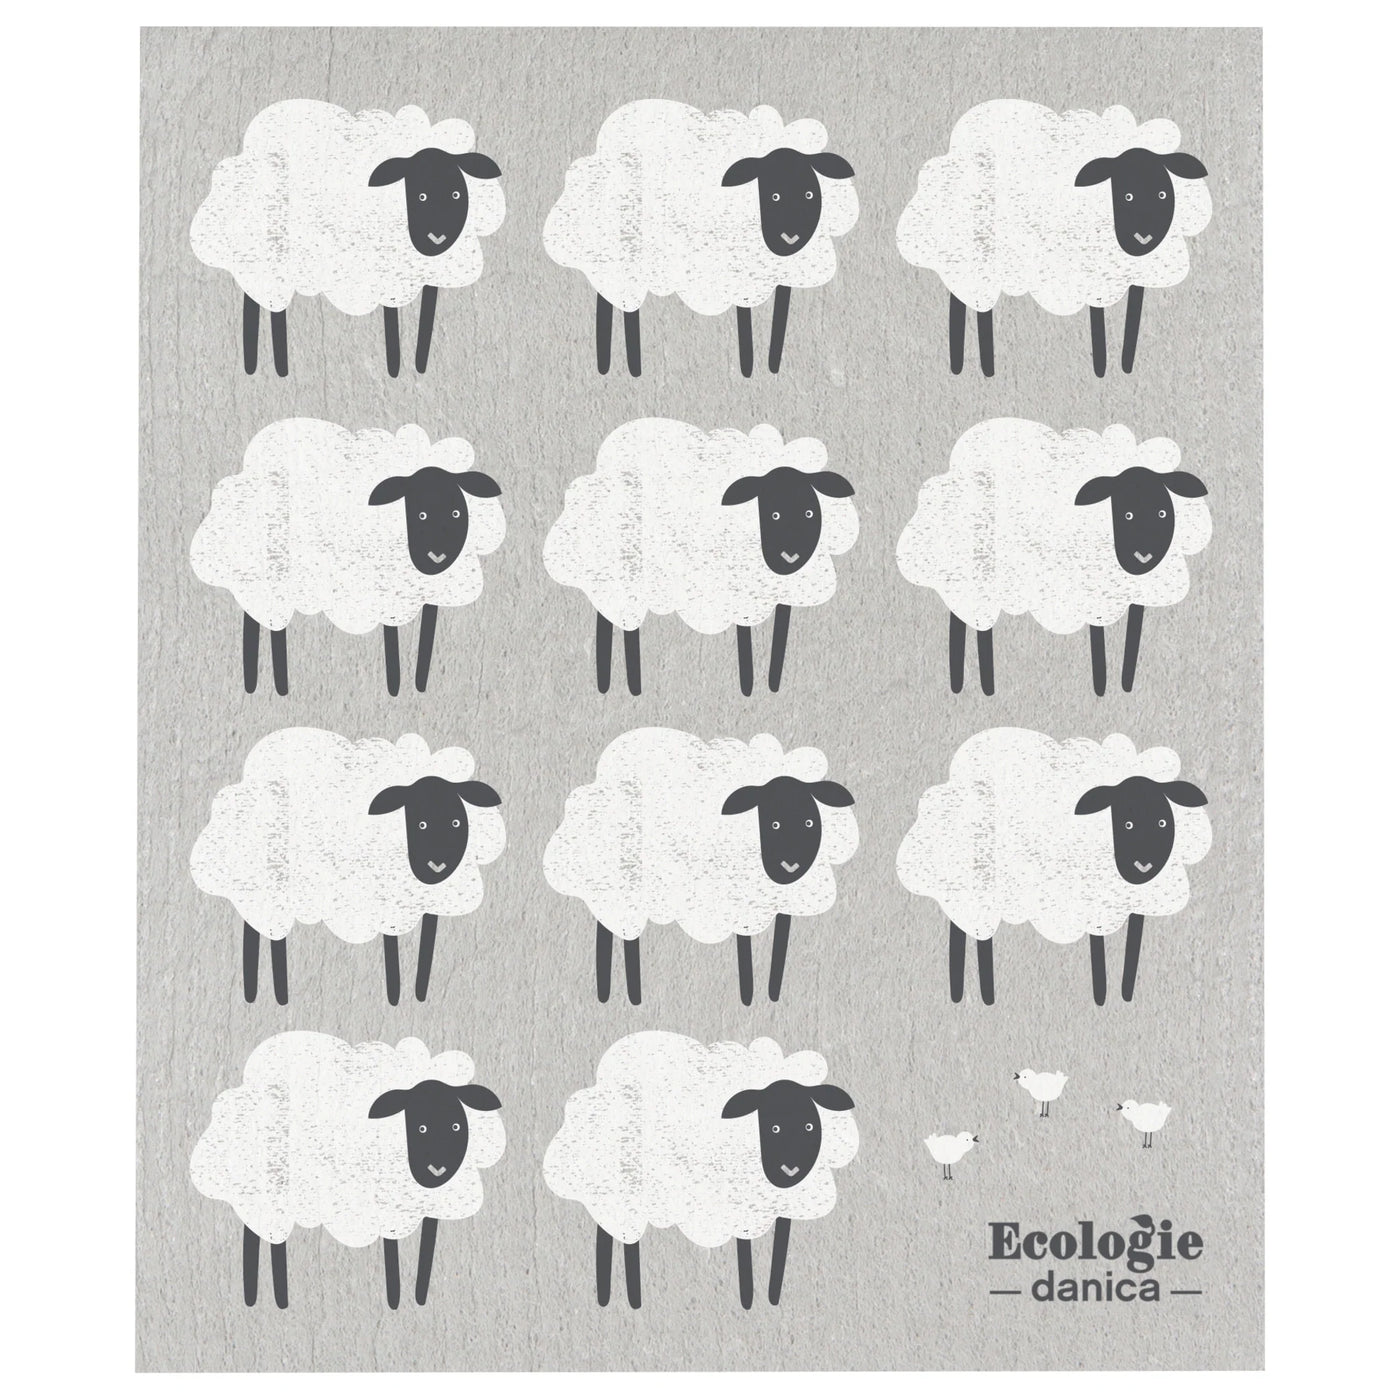 Counting Sheep Dishcloth